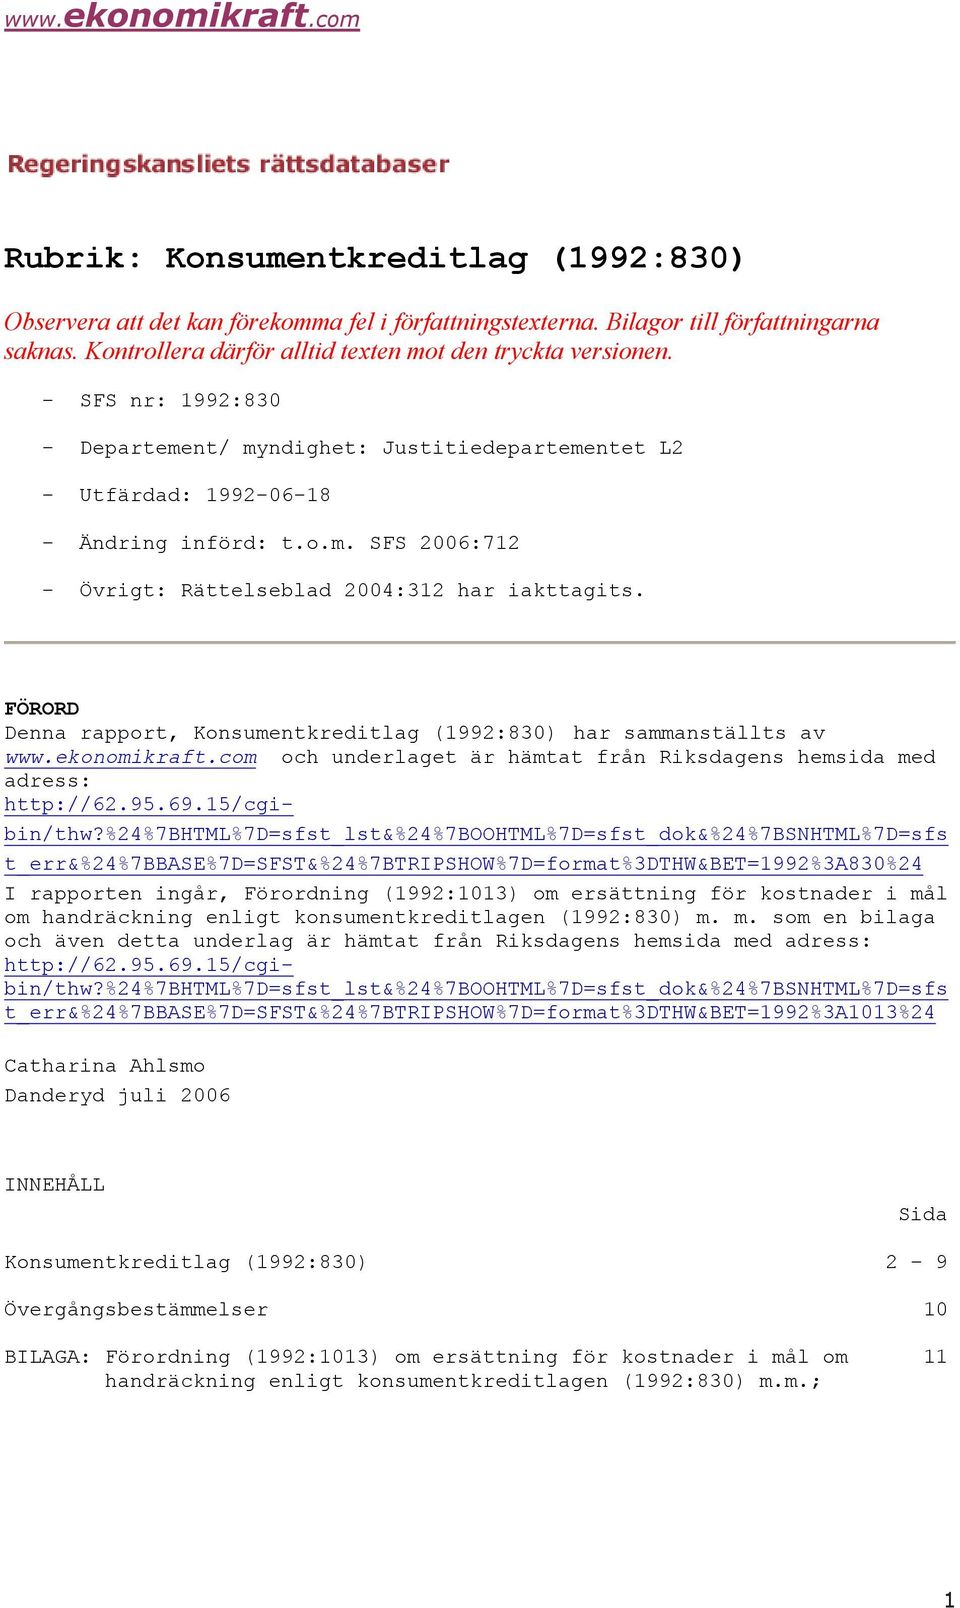 FÖRORD Denna rapport, Konsumentkreditlag (1992:830) har sammanställts av www.ekonomikraft.com och underlaget är hämtat från Riksdagens hemsida med adress: http://62.95.69.15/cgibin/thw?